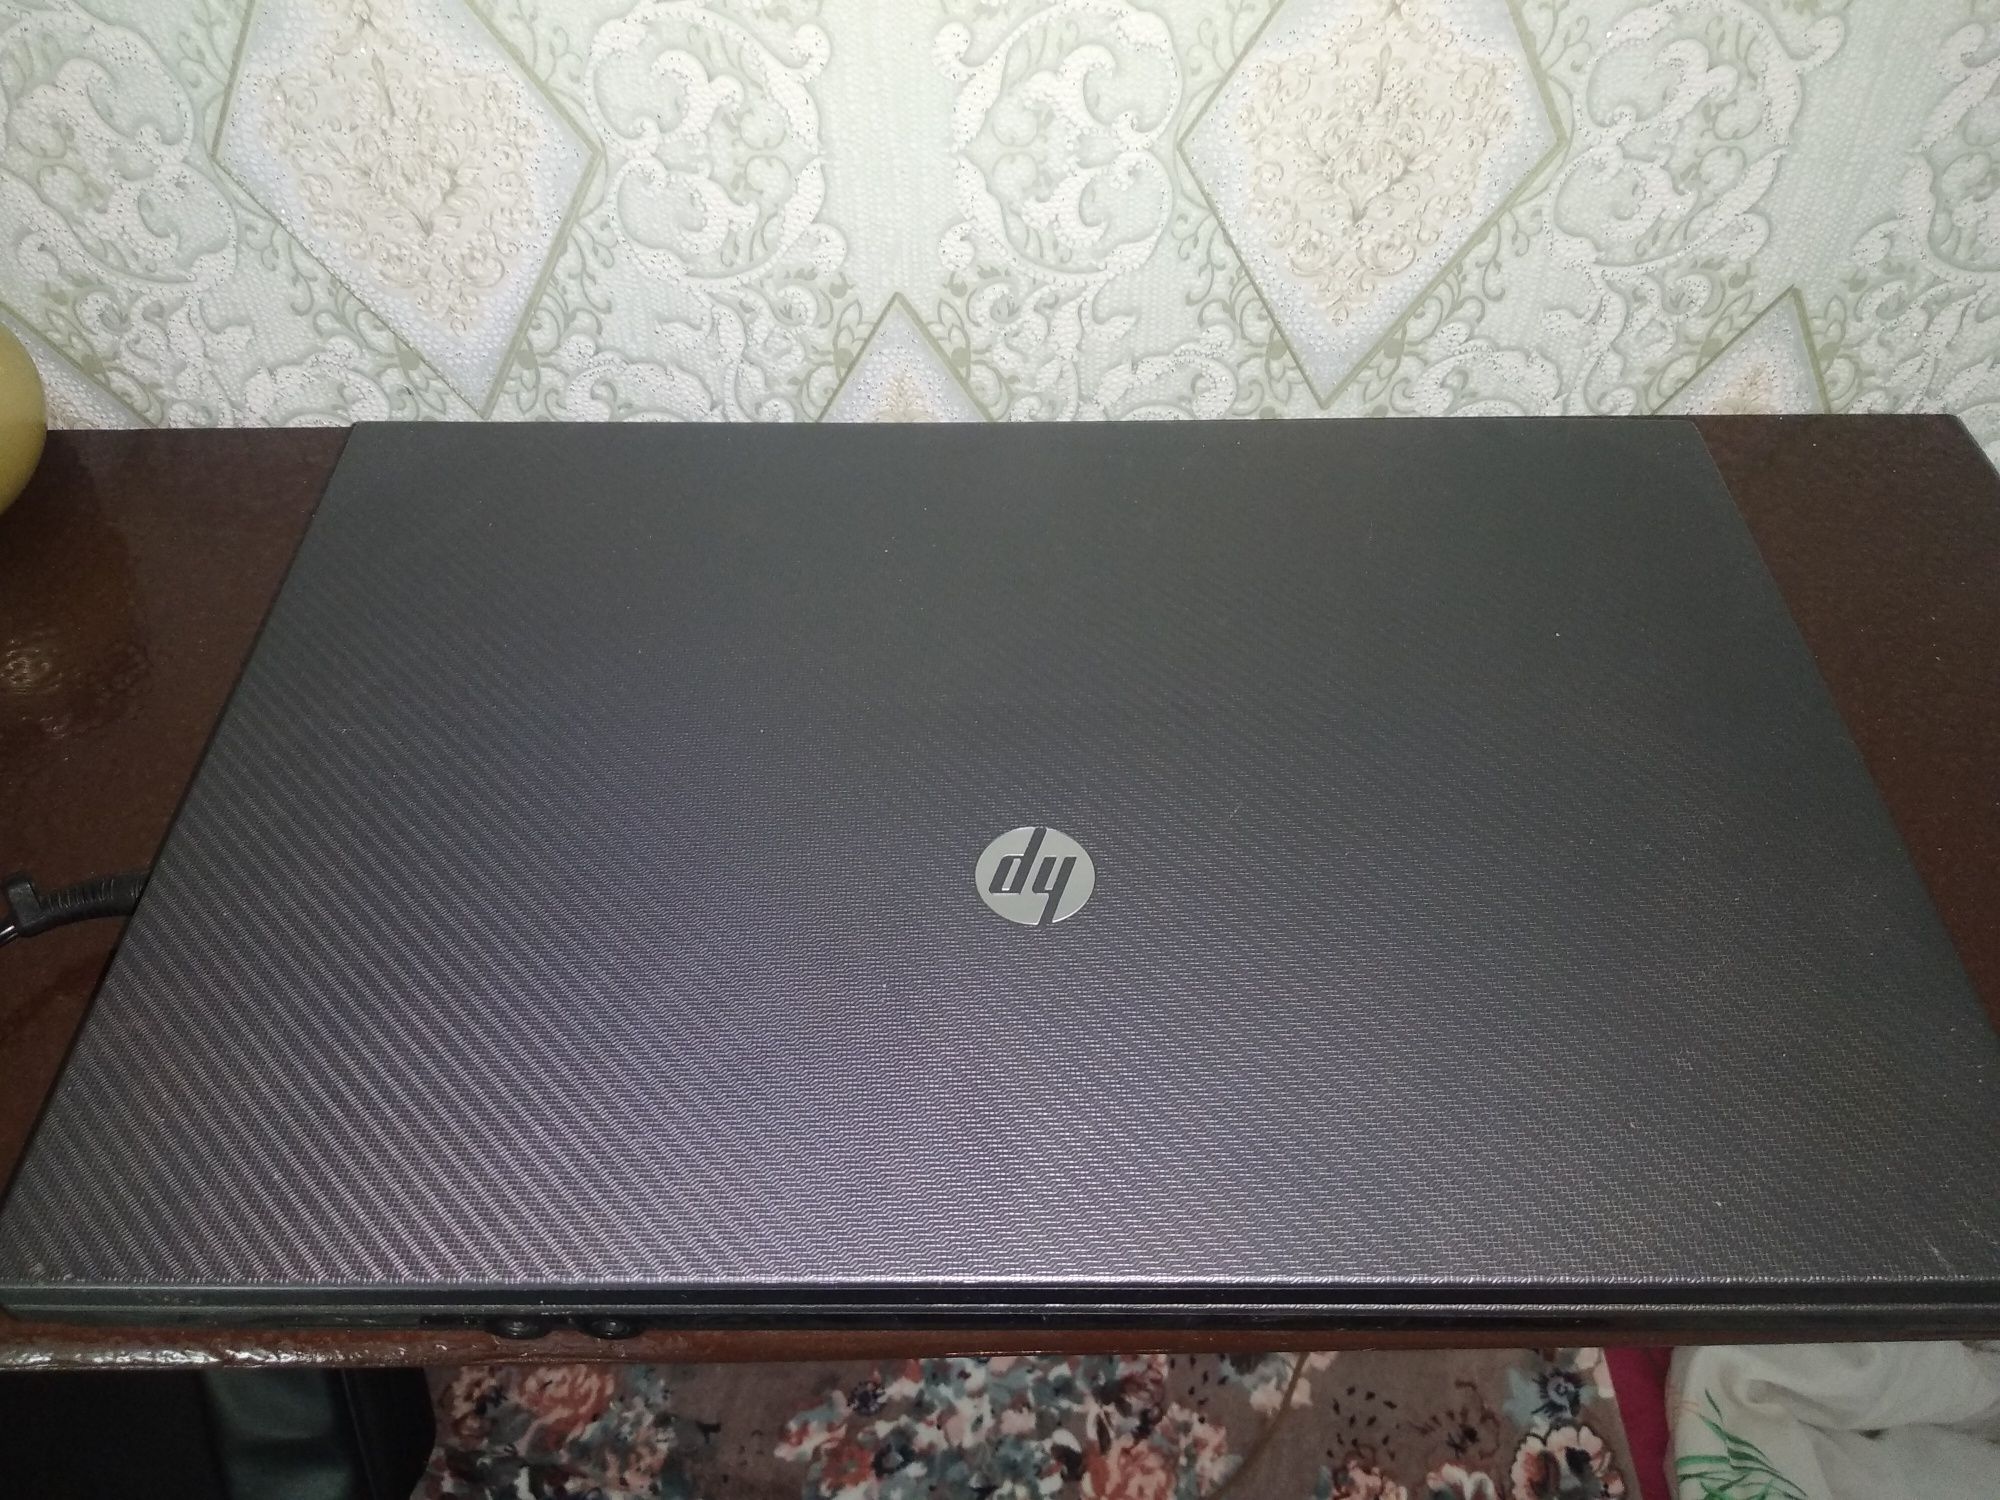 Ноутбук HP Compaq 625